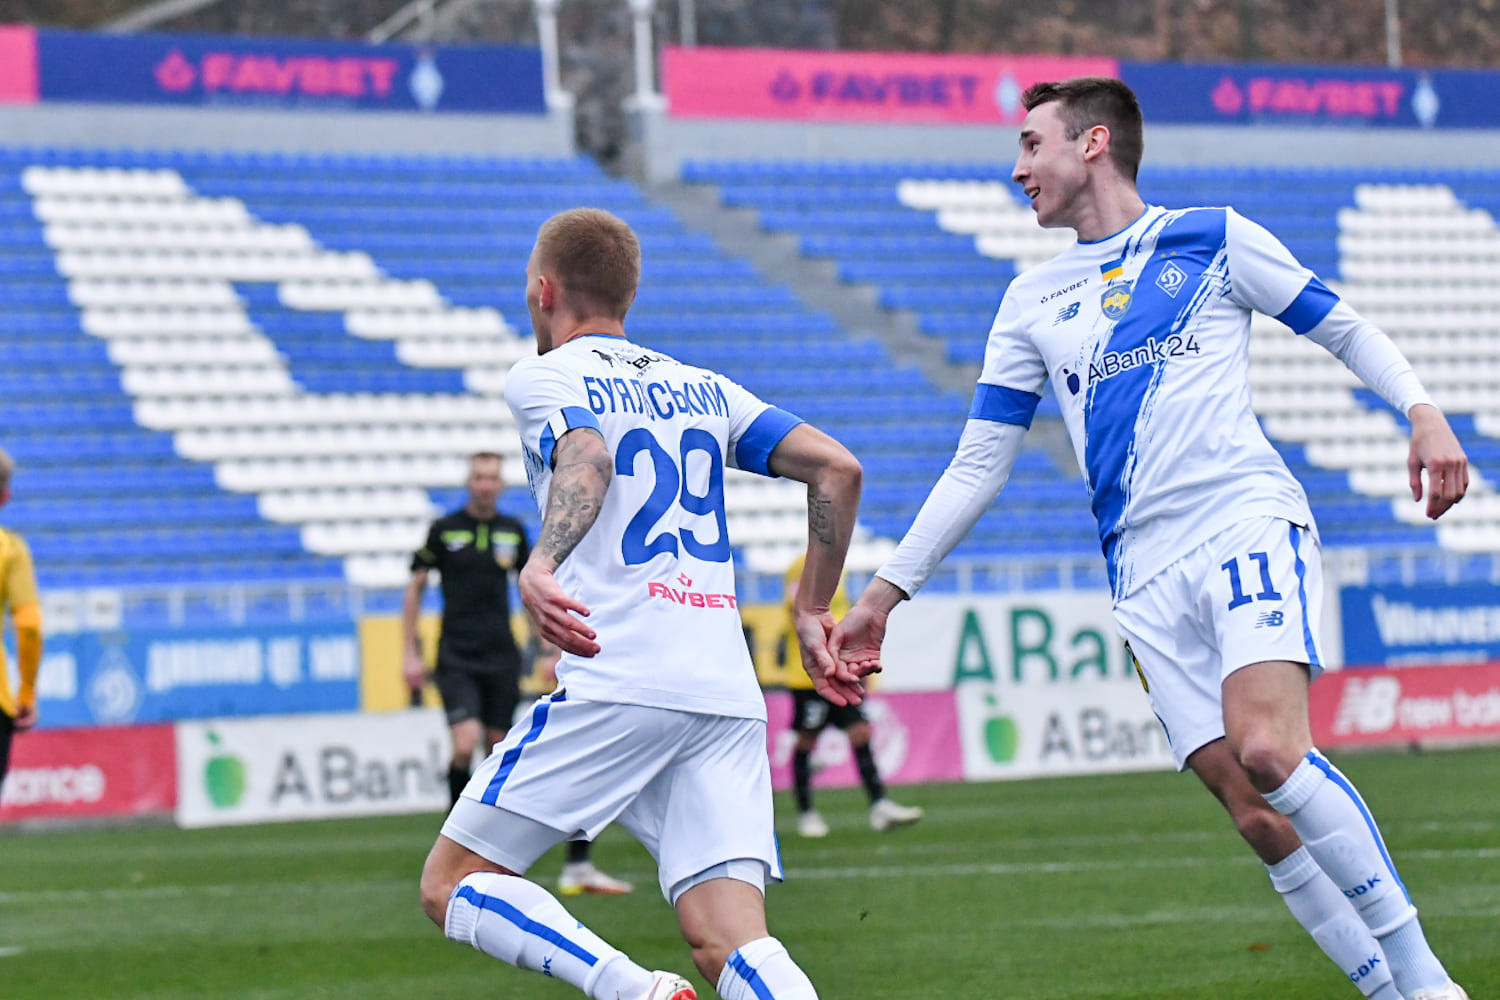 Oleksandria – Dynamo: goalscorers